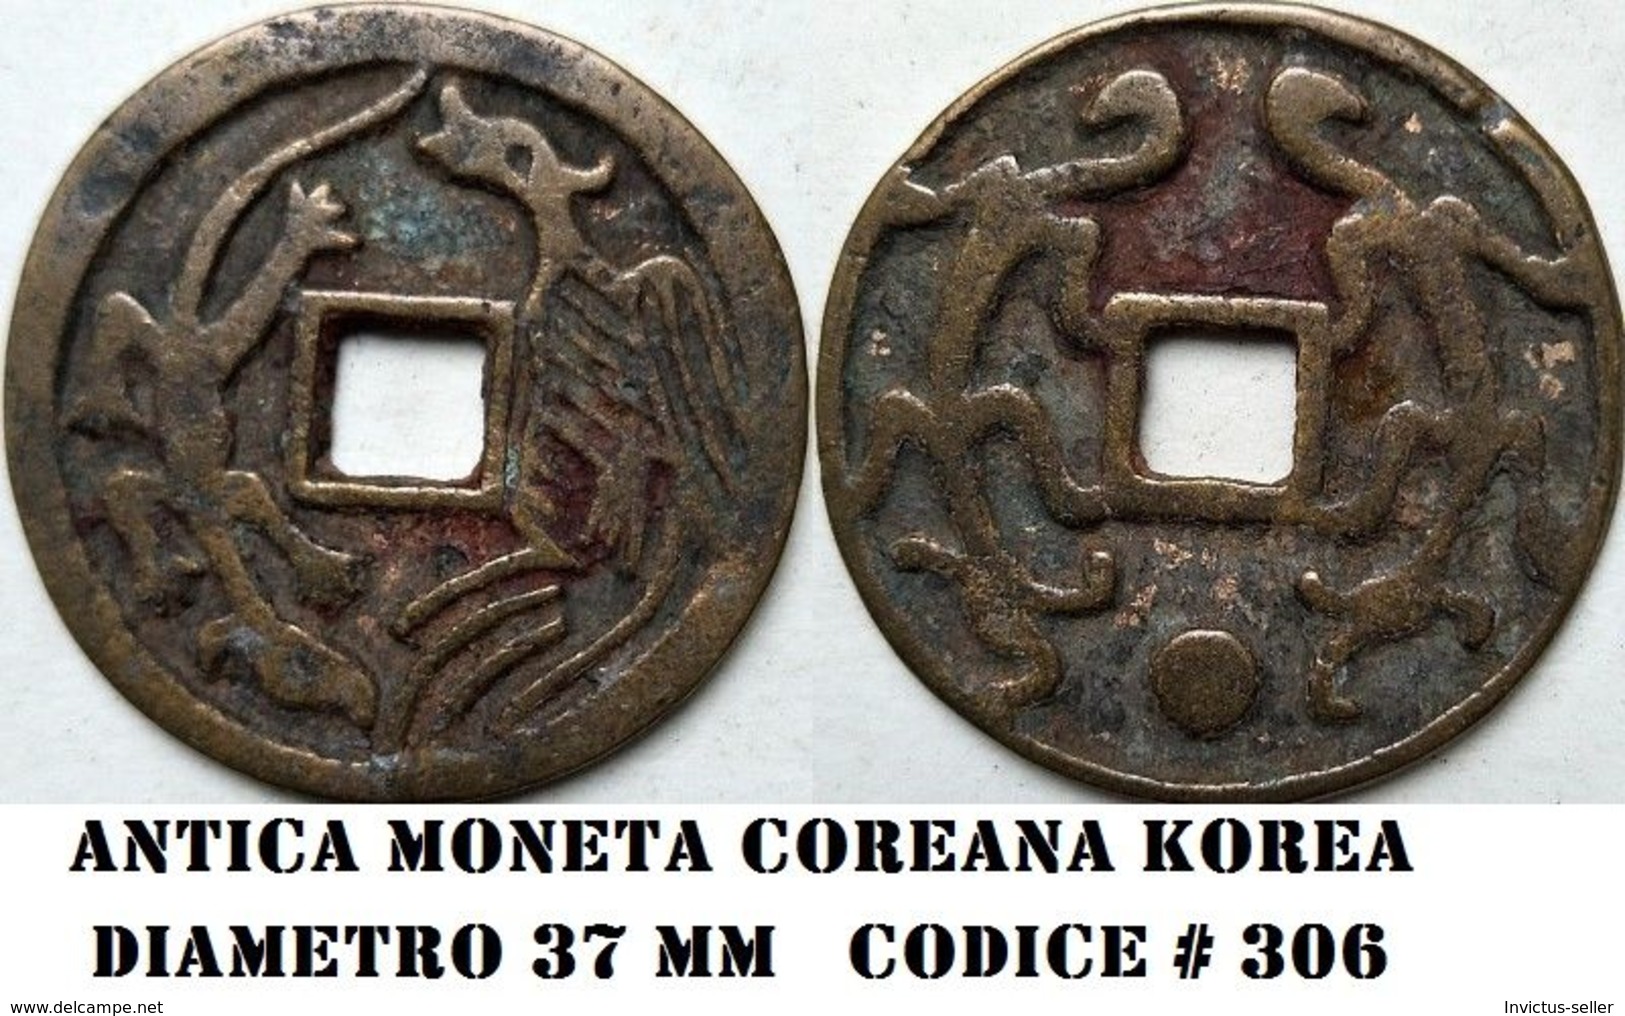 KOREA ANTICA MONETA COREANA PERIODO IMPERIALE IMPERIALE COREANE COINS  PIECES MONET COREA IMPERIAL COD #306 - Corea Del Nord